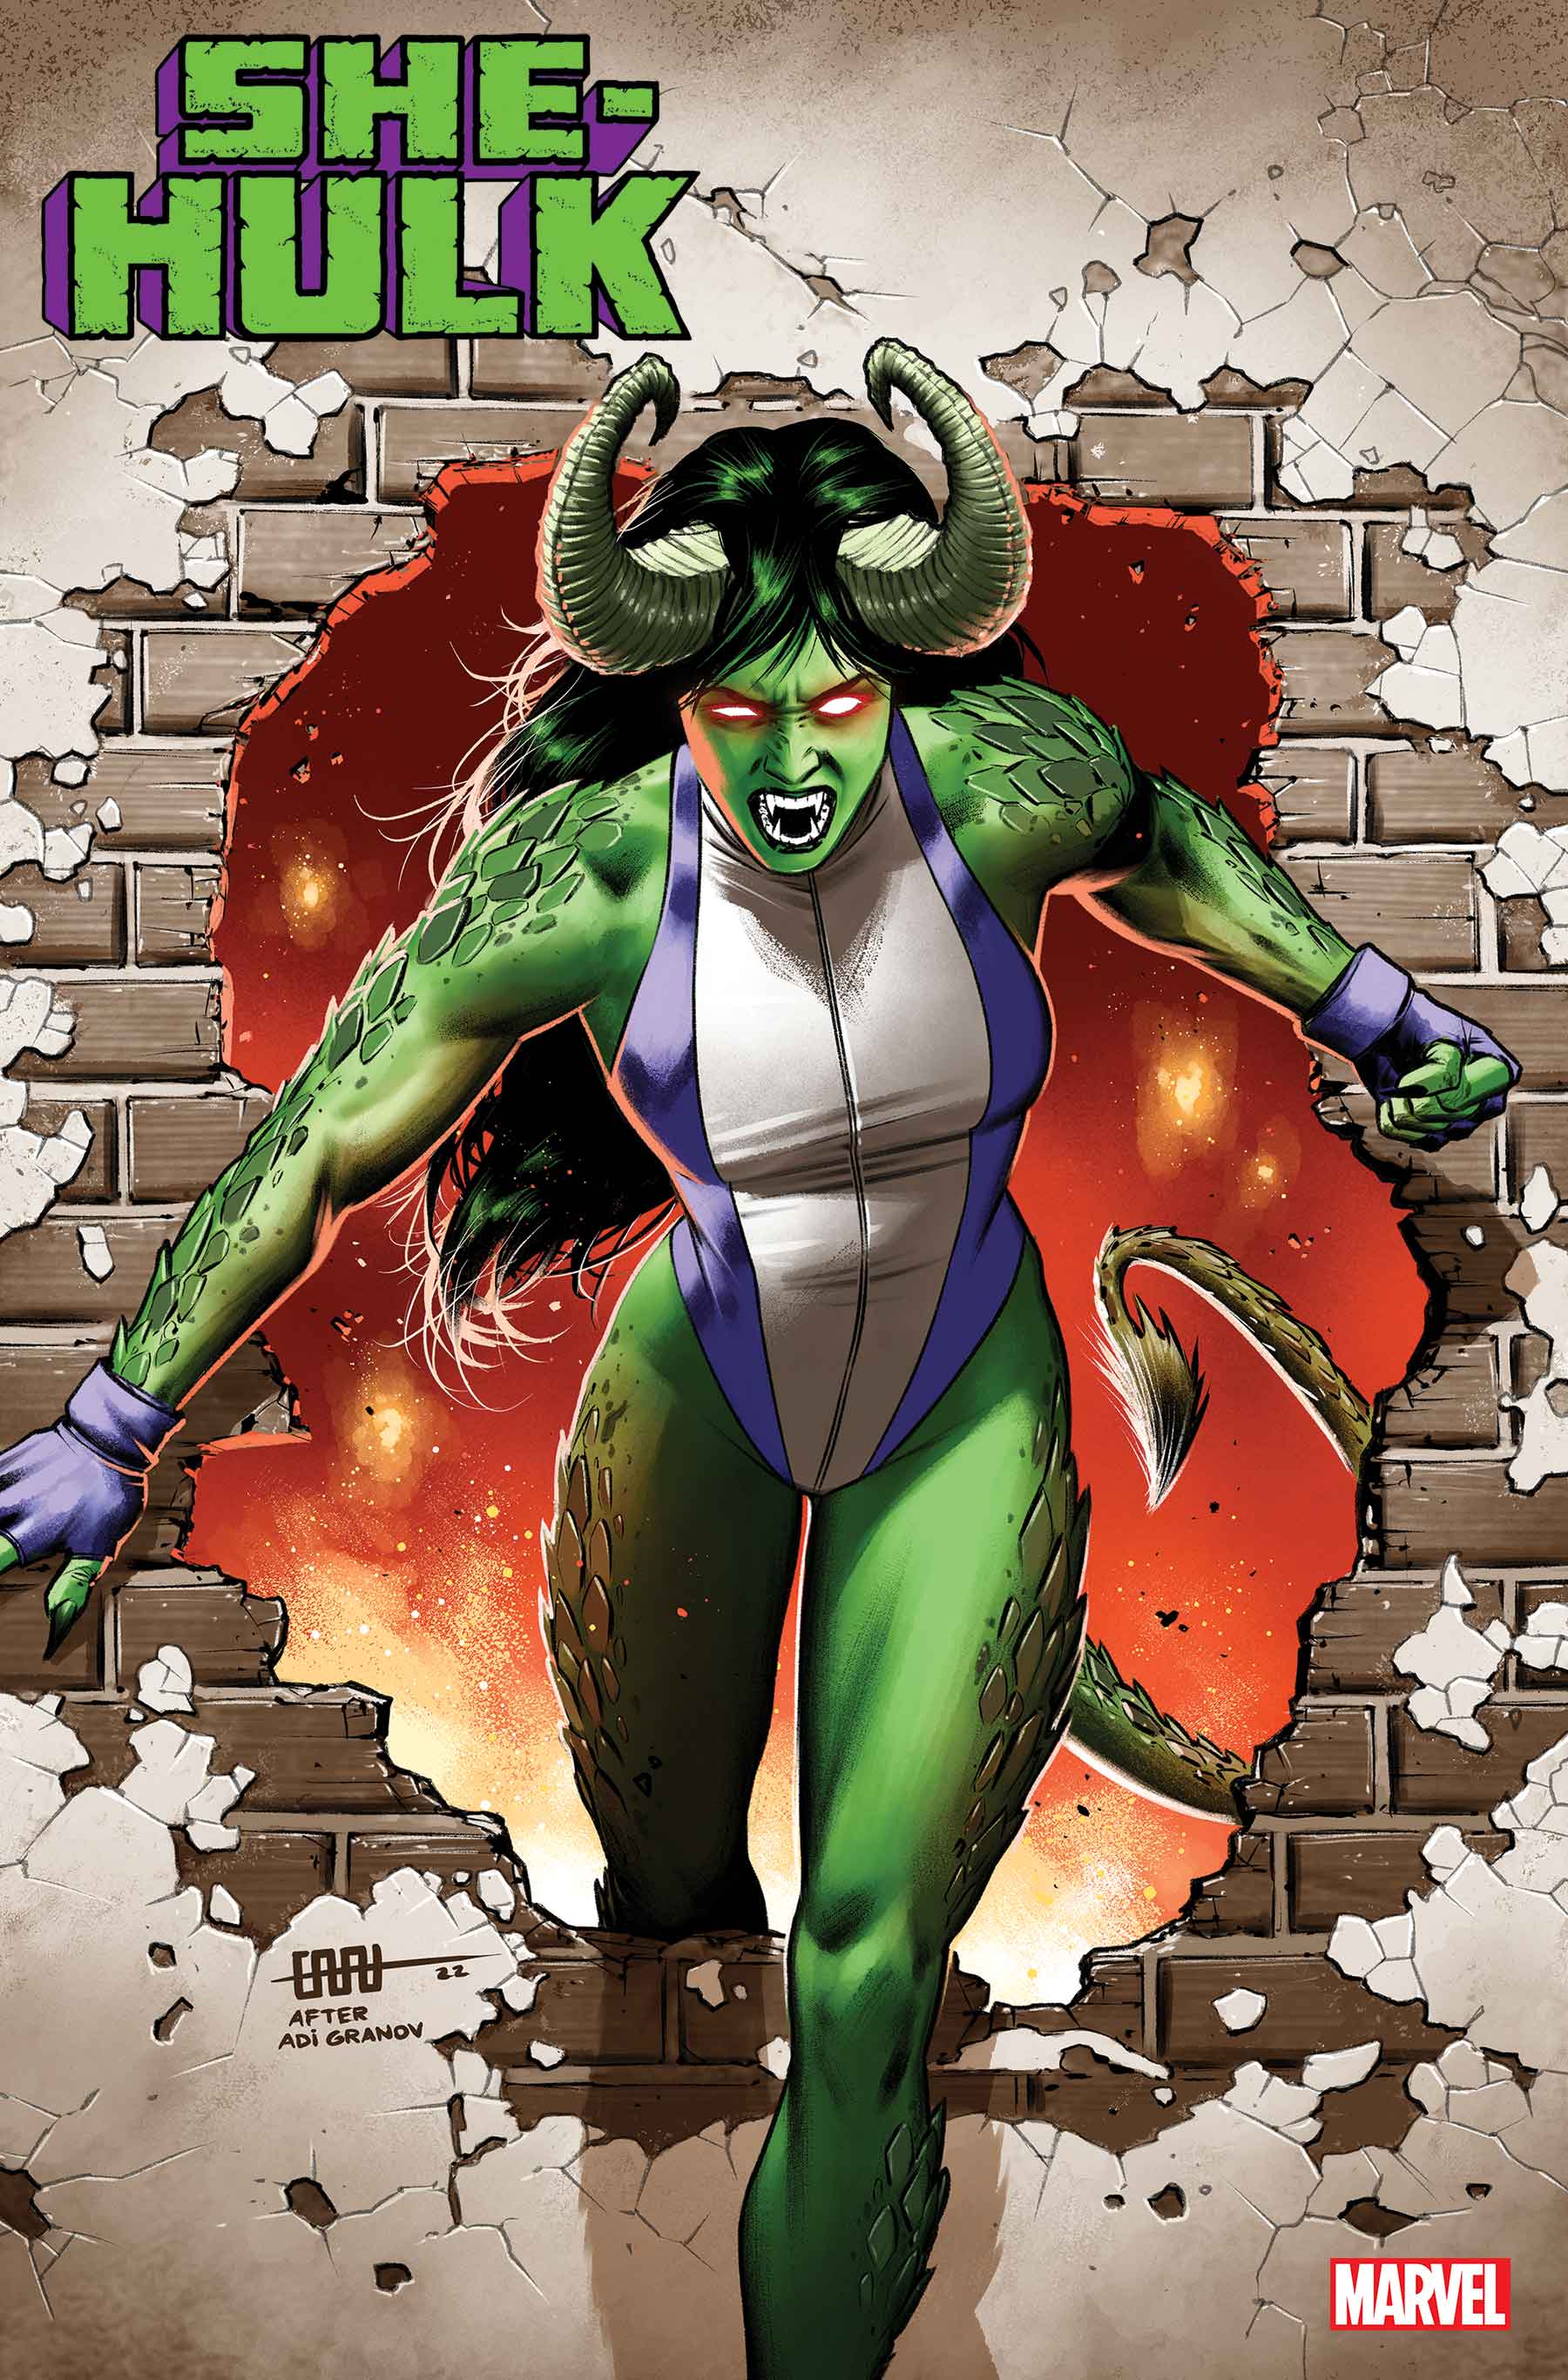 She-Hulk (2022) #9 (Variant)